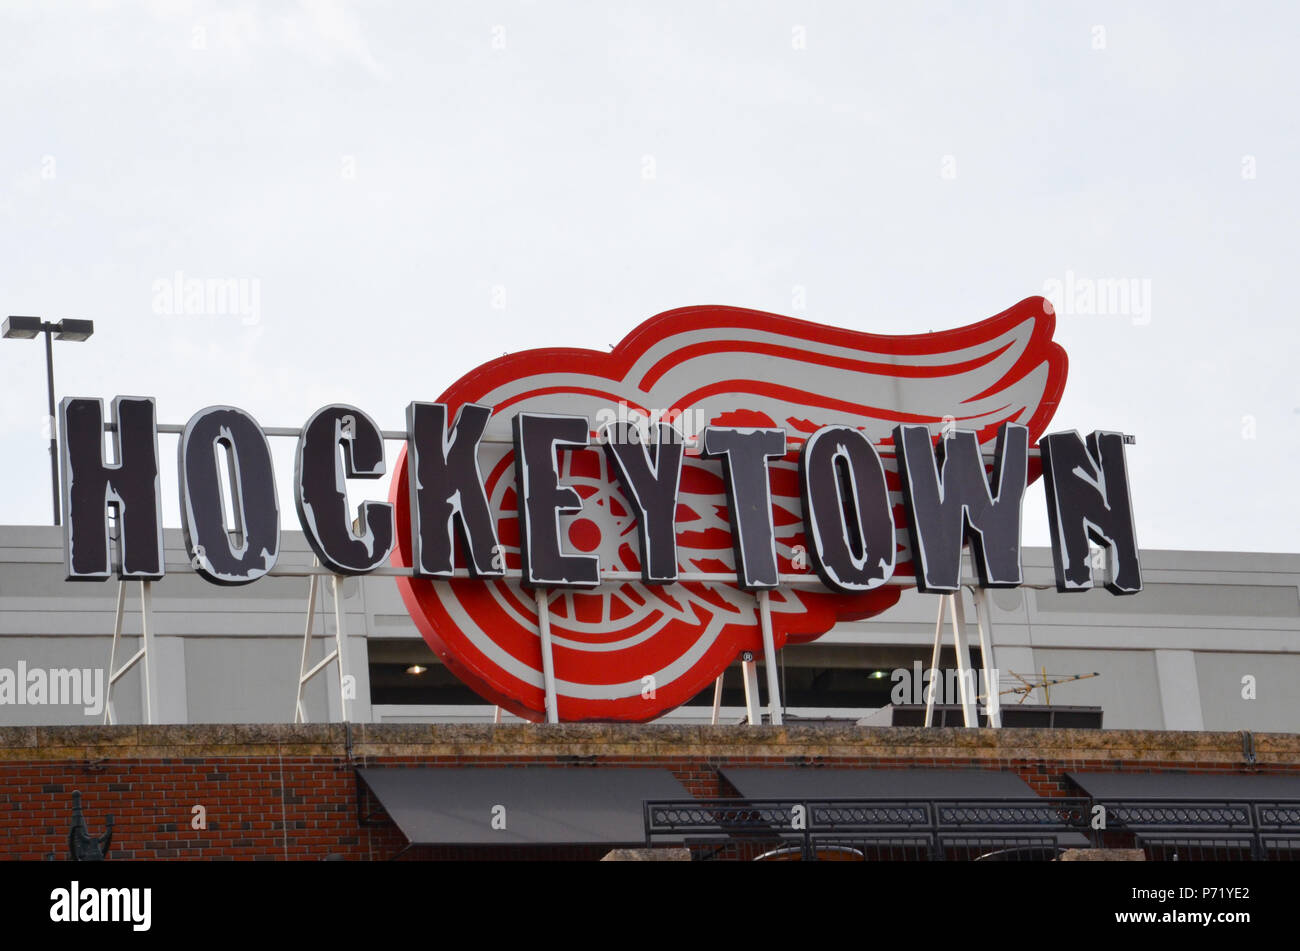 DETROIT, MI / USA - 21 octobre 2017 : Detroit's Hockeytown Cafe, dont le logo est affiché au sommet de l'édifice, a été fondée par Mike Ilitch propriétaire des Red Wings Banque D'Images